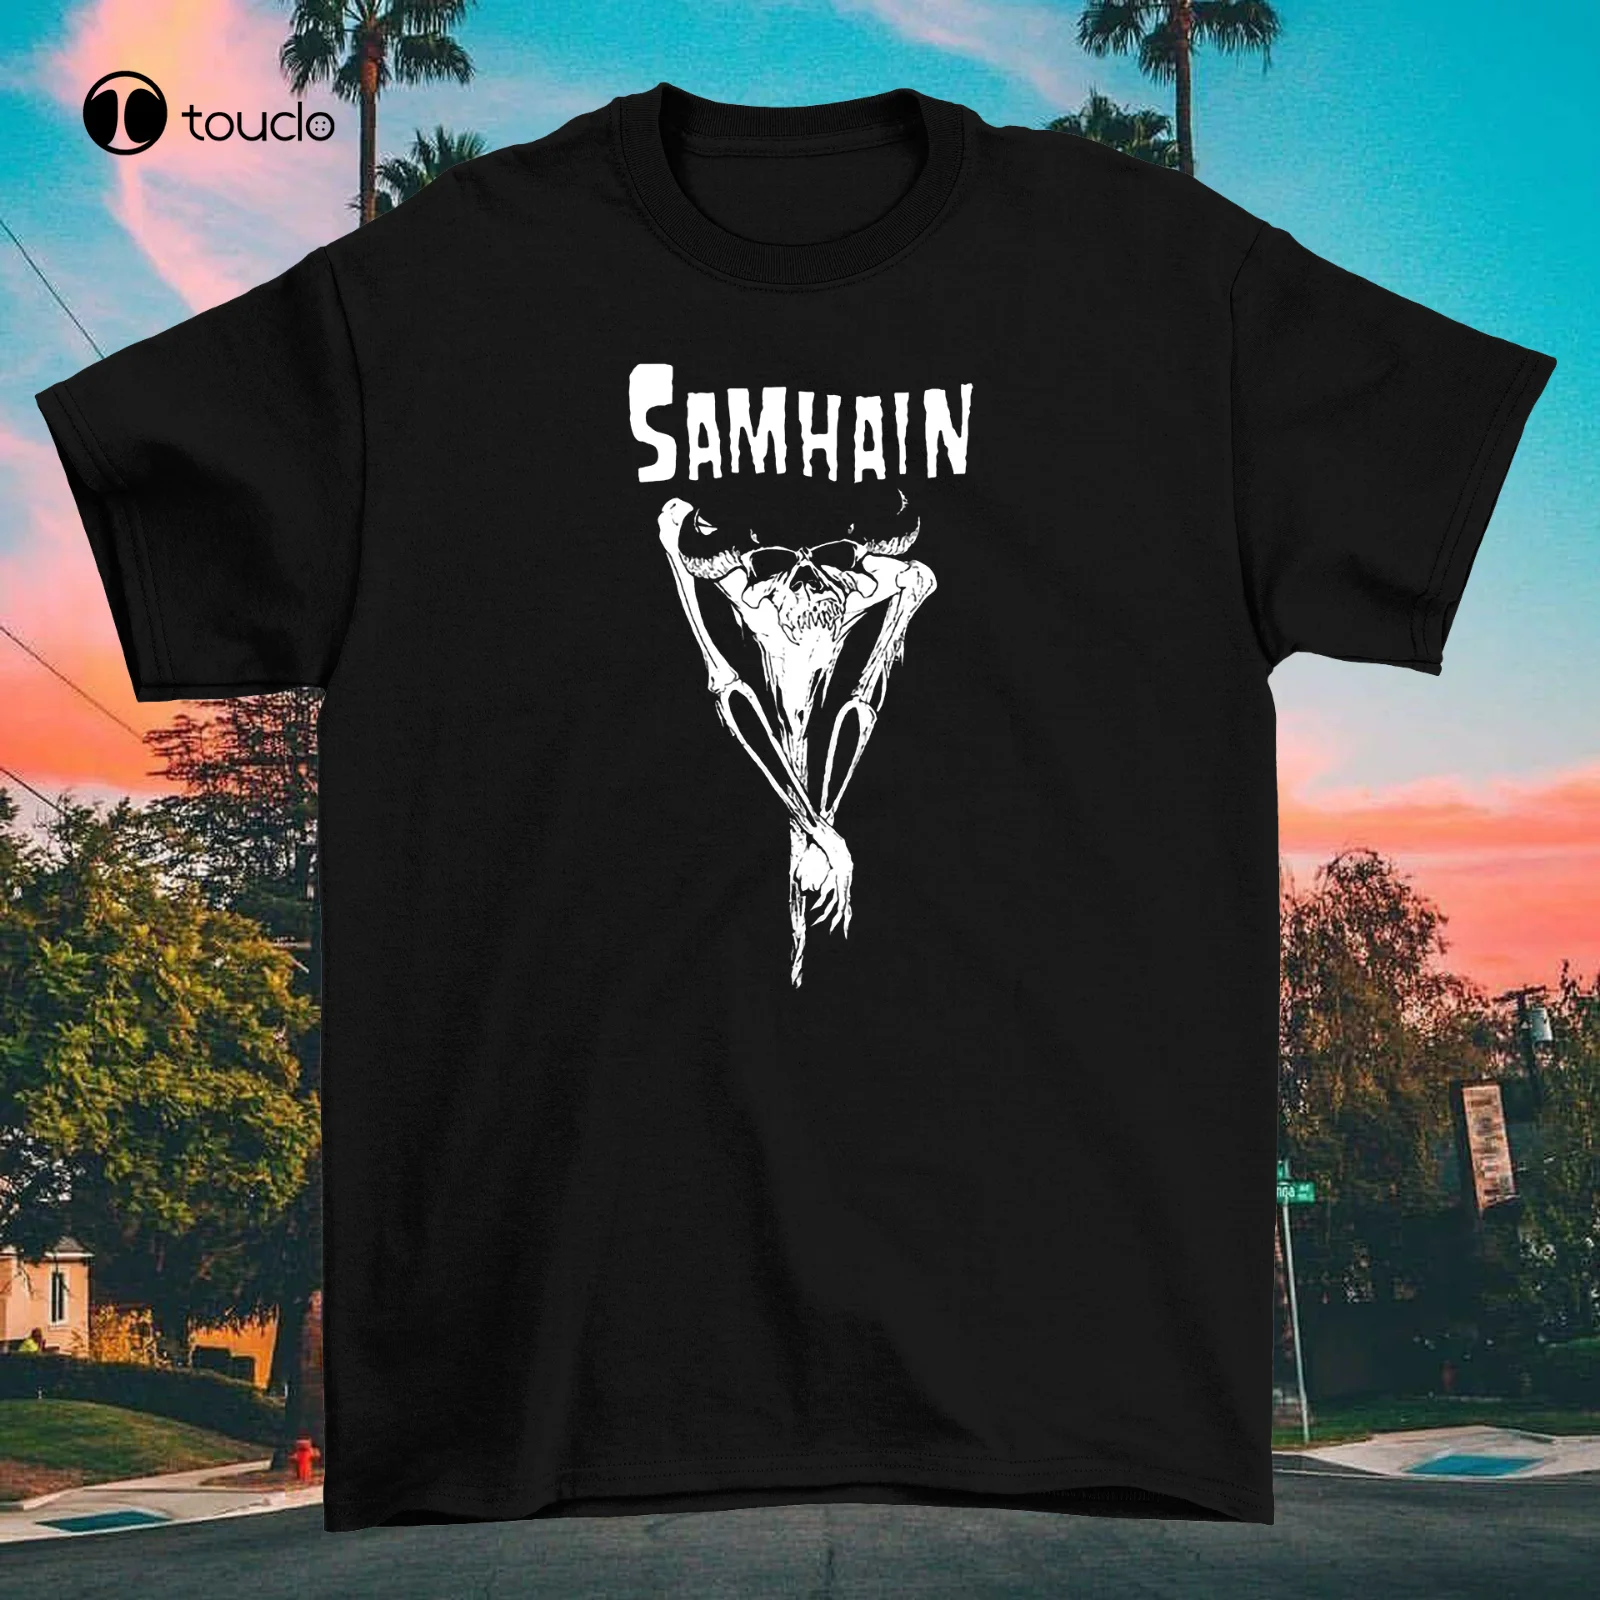 

New Samhain November Coming Fire Cotton Black Unisex S-2345Xl T-Shirt Cotten Tee Shirt